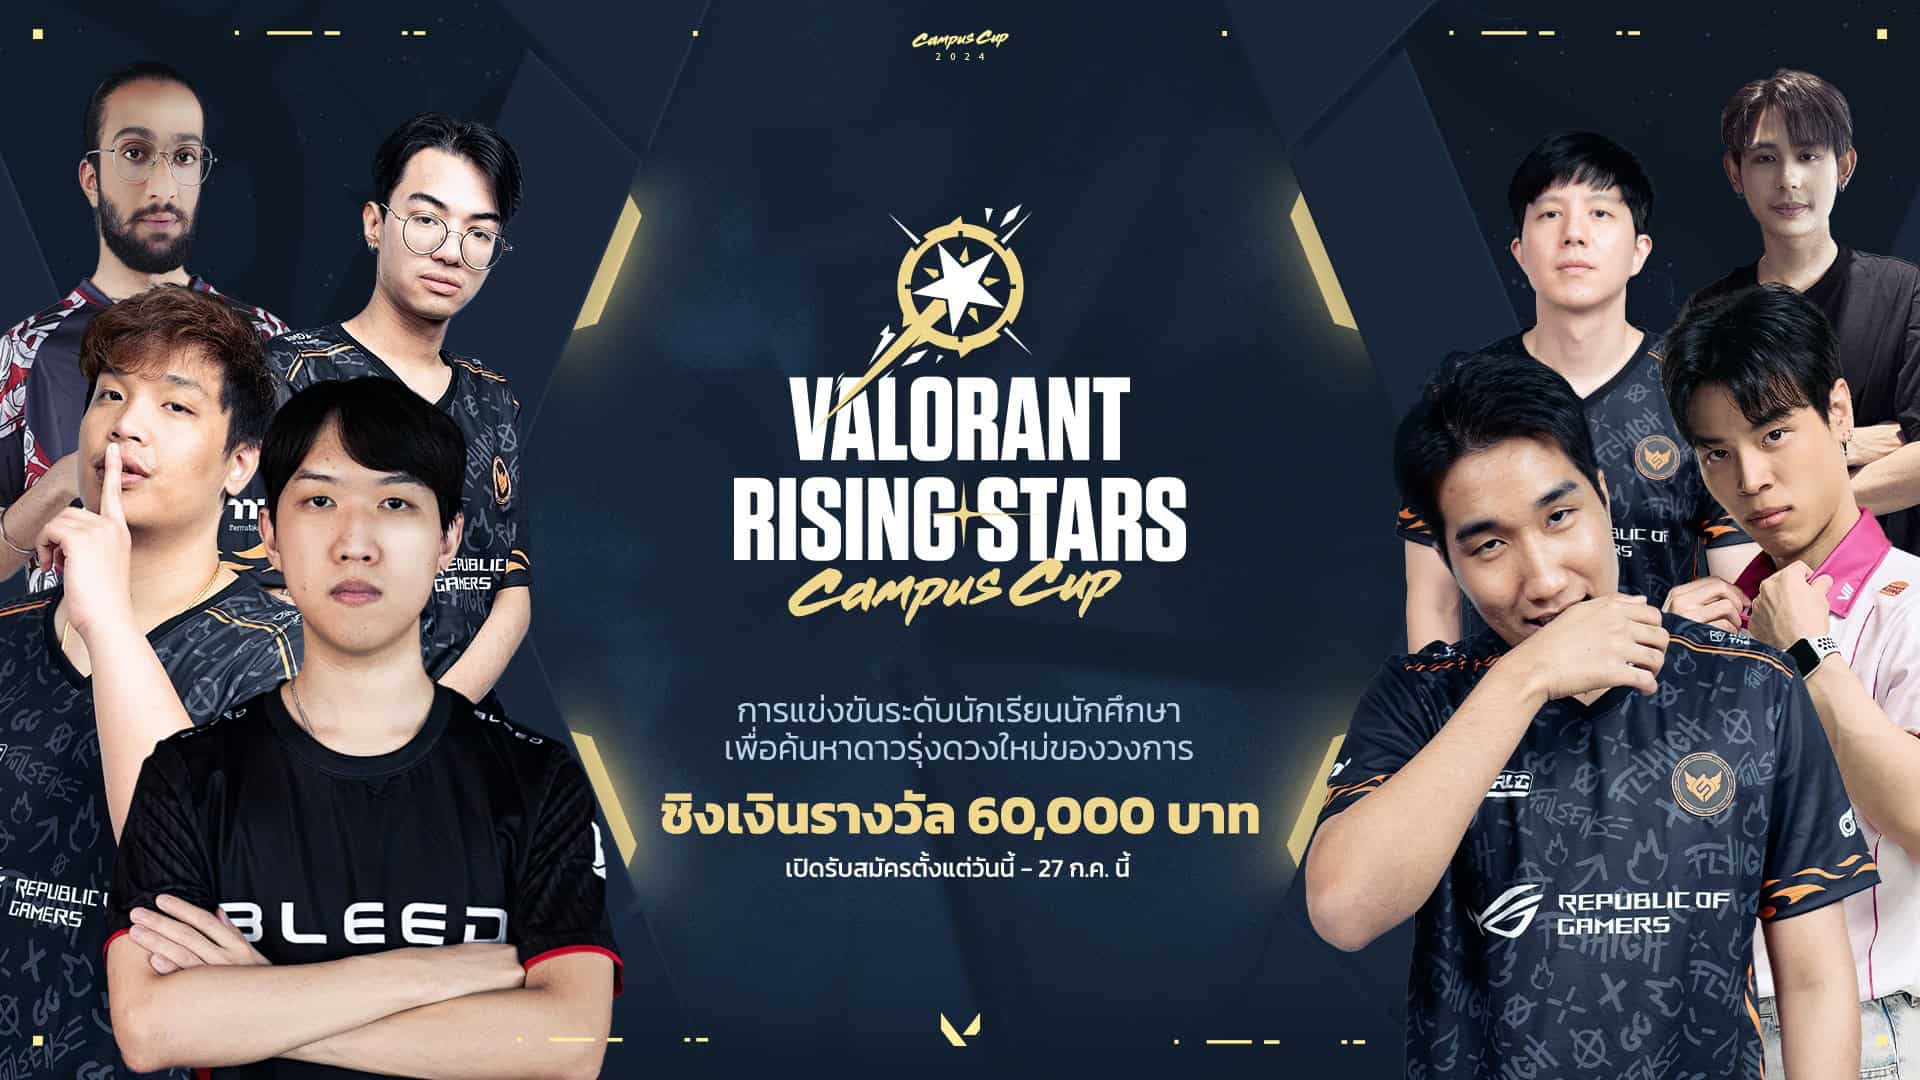 พร้อมไหมวัยรุ่นวาโล! ‘VALORANT Rising Stars Campus Cup’สังเวียนประชันฝีมือสำหรับนักเรียน นักศึกษาสู่การเป็นดาวรุ่งดวงใหม่ในวงการ!